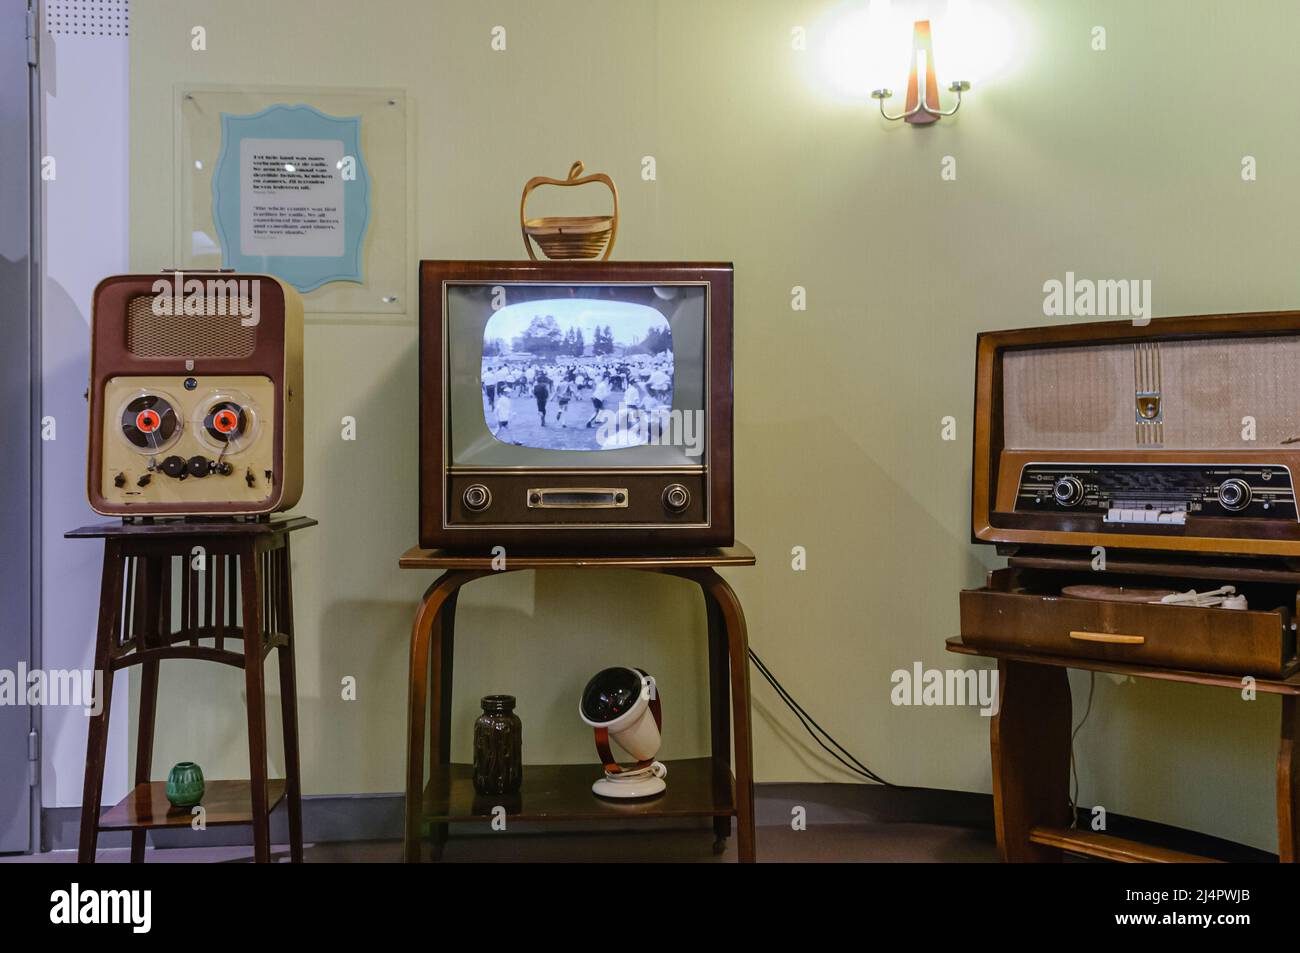 Haspel zu Haspel player, Schwarz/Weiß-Fernseher und ein altes Medium/Long Wave Radio in ein Wohnzimmer aus den 50er Jahren. Stockfoto